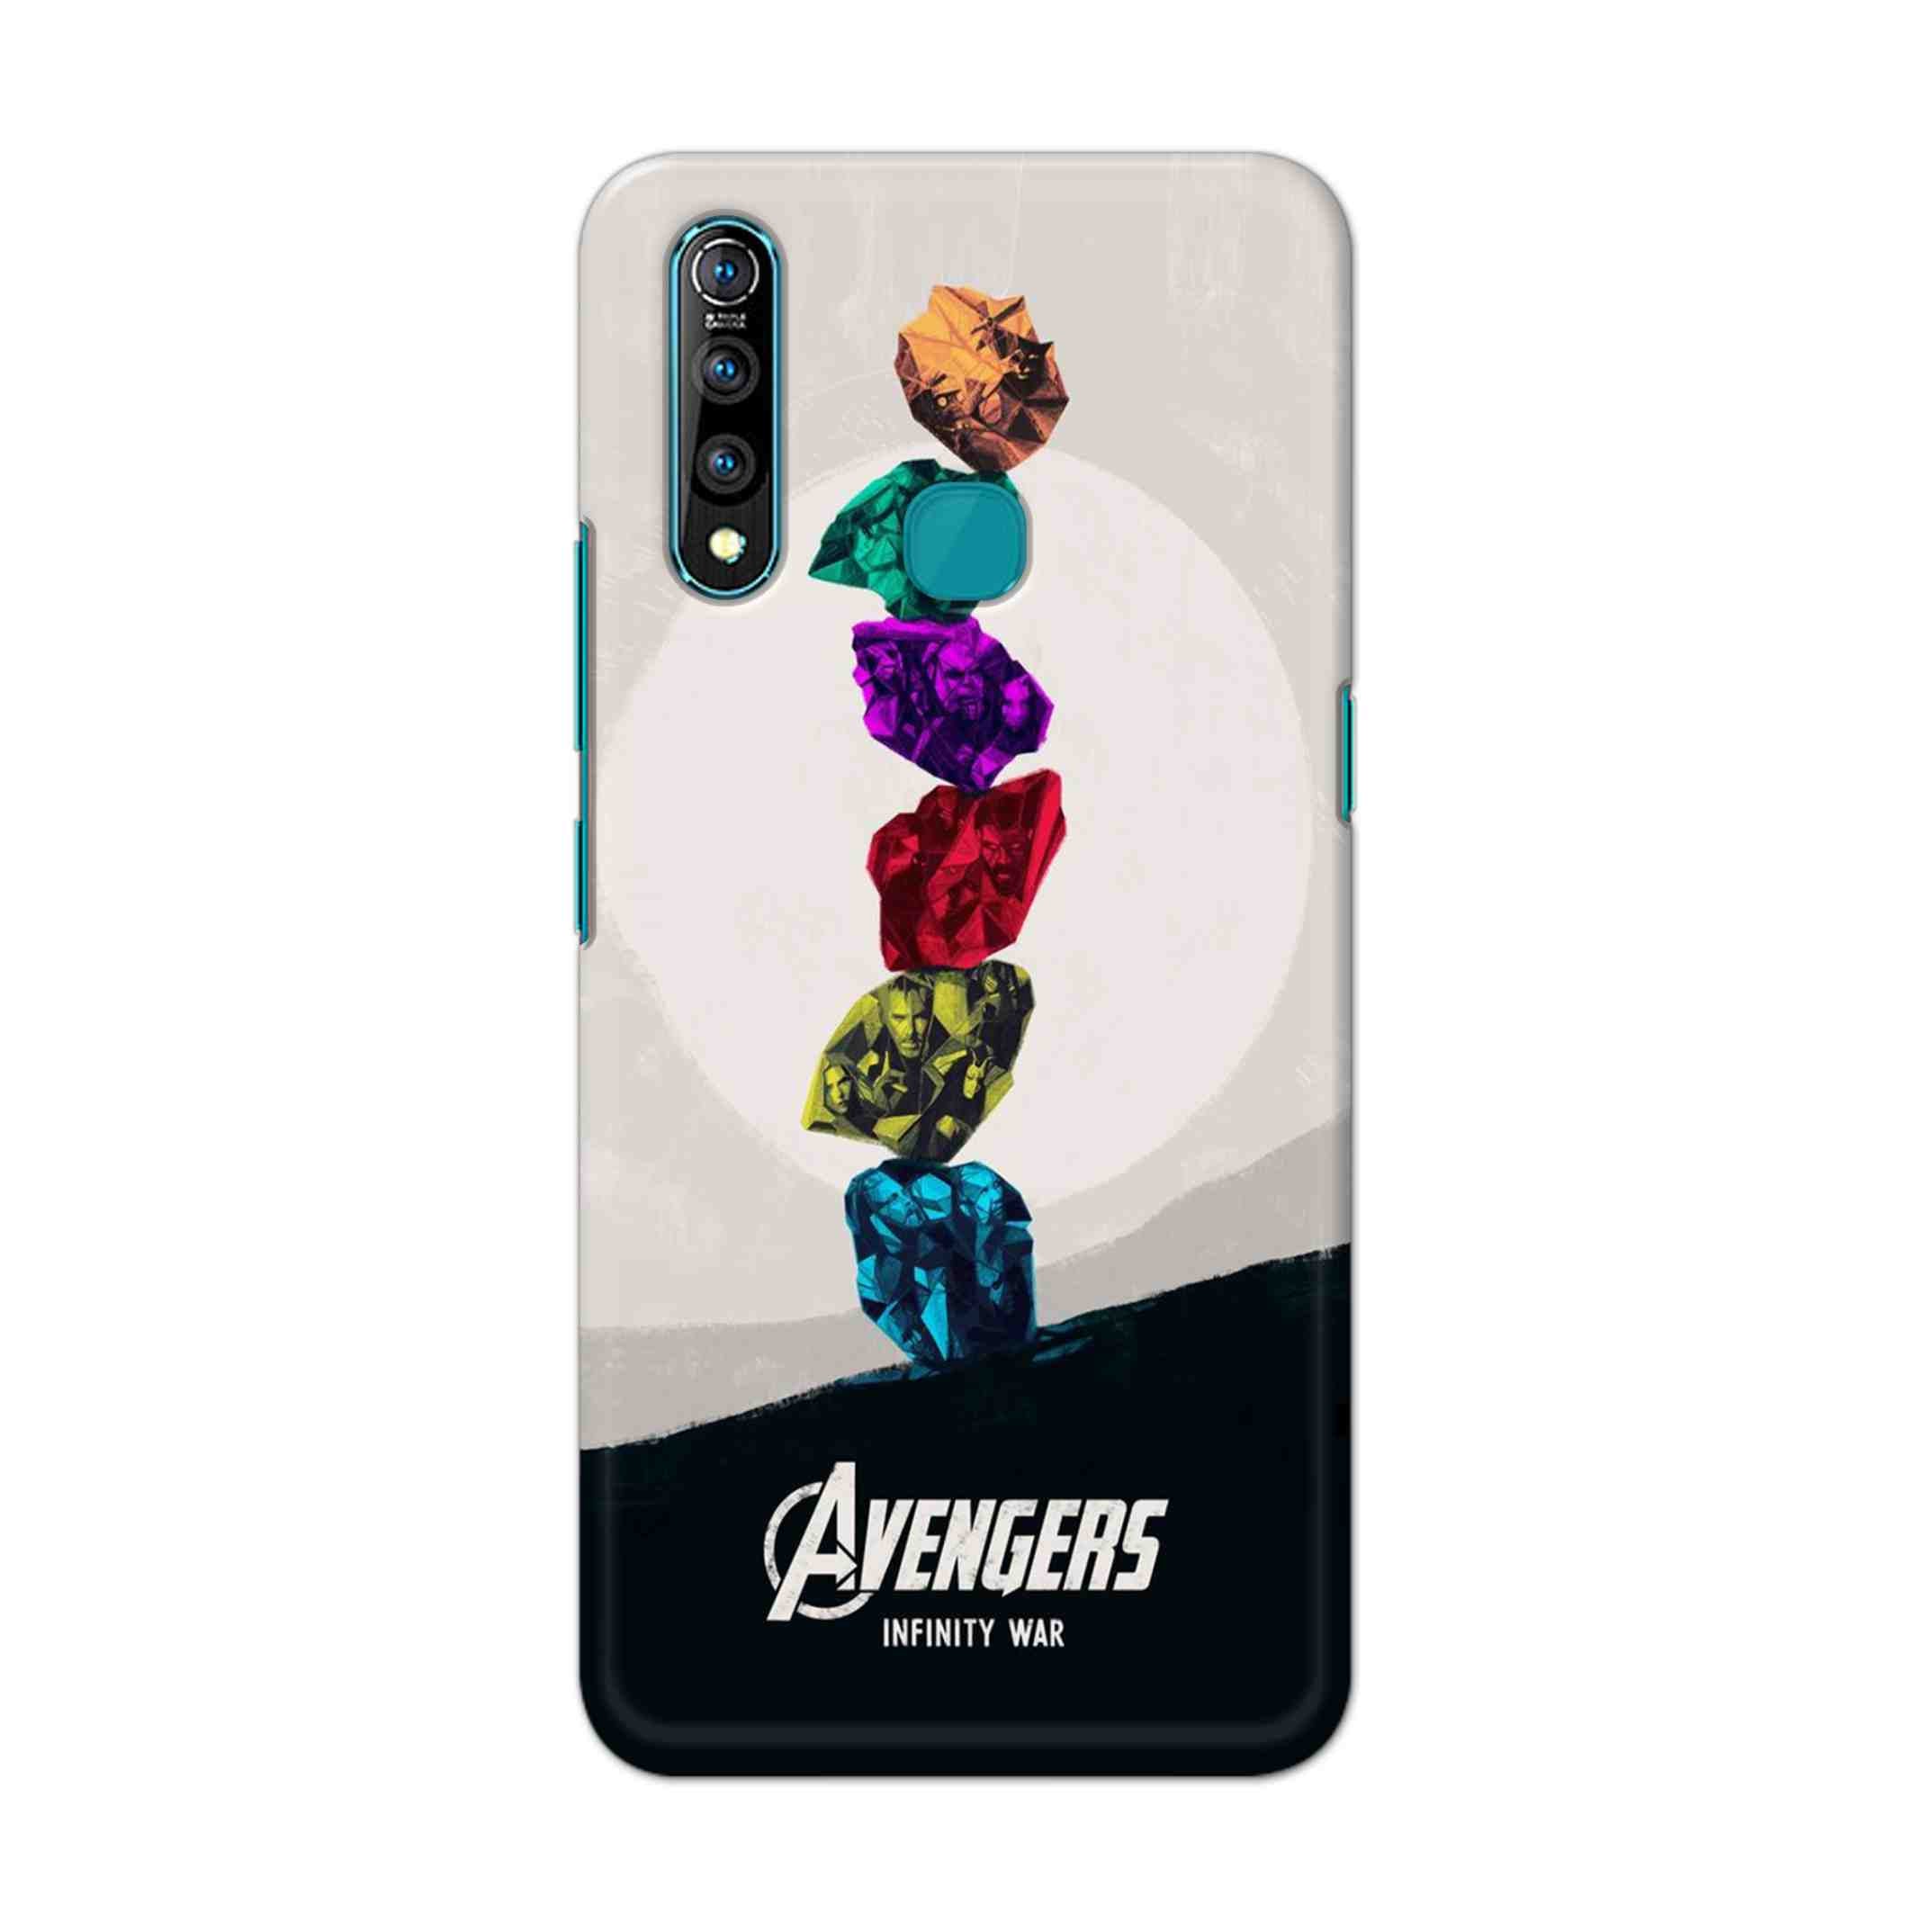 Buy Avengers Stone Hard Back Mobile Phone Case Cover For Vivo Z1 pro Online